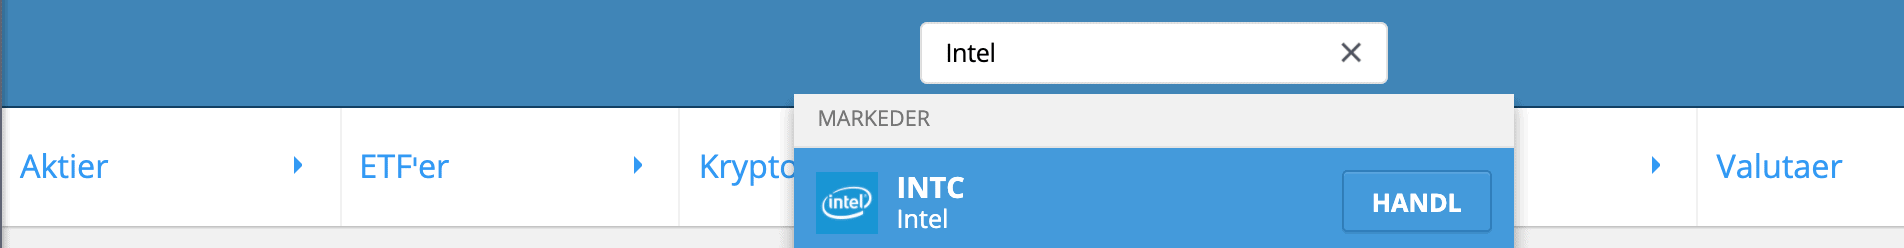 Soeg Intel Aktier